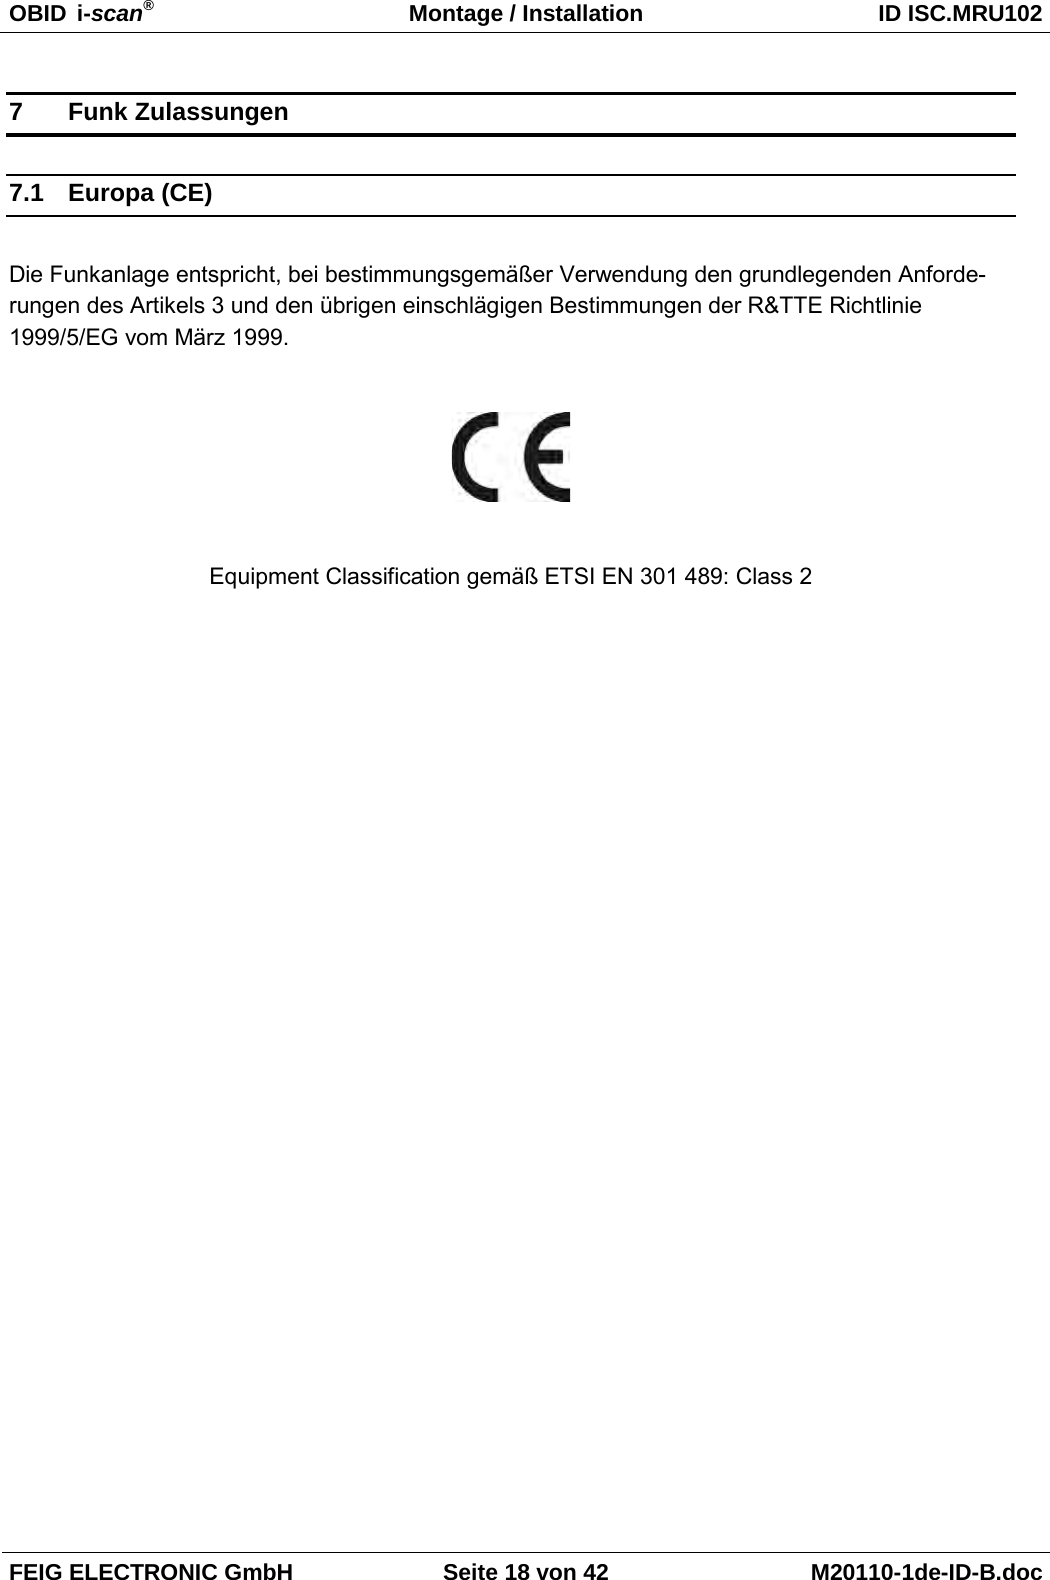 OBID  i-scan® Montage / Installation ID ISC.MRU102  FEIG ELECTRONIC GmbH Seite 18 von 42 M20110-1de-ID-B.doc  7  Funk Zulassungen 7.1 Europa (CE)  Die Funkanlage entspricht, bei bestimmungsgemäßer Verwendung den grundlegenden Anforde-rungen des Artikels 3 und den übrigen einschlägigen Bestimmungen der R&amp;TTE Richtlinie 1999/5/EG vom März 1999.    Equipment Classification gemäß ETSI EN 301 489: Class 2 